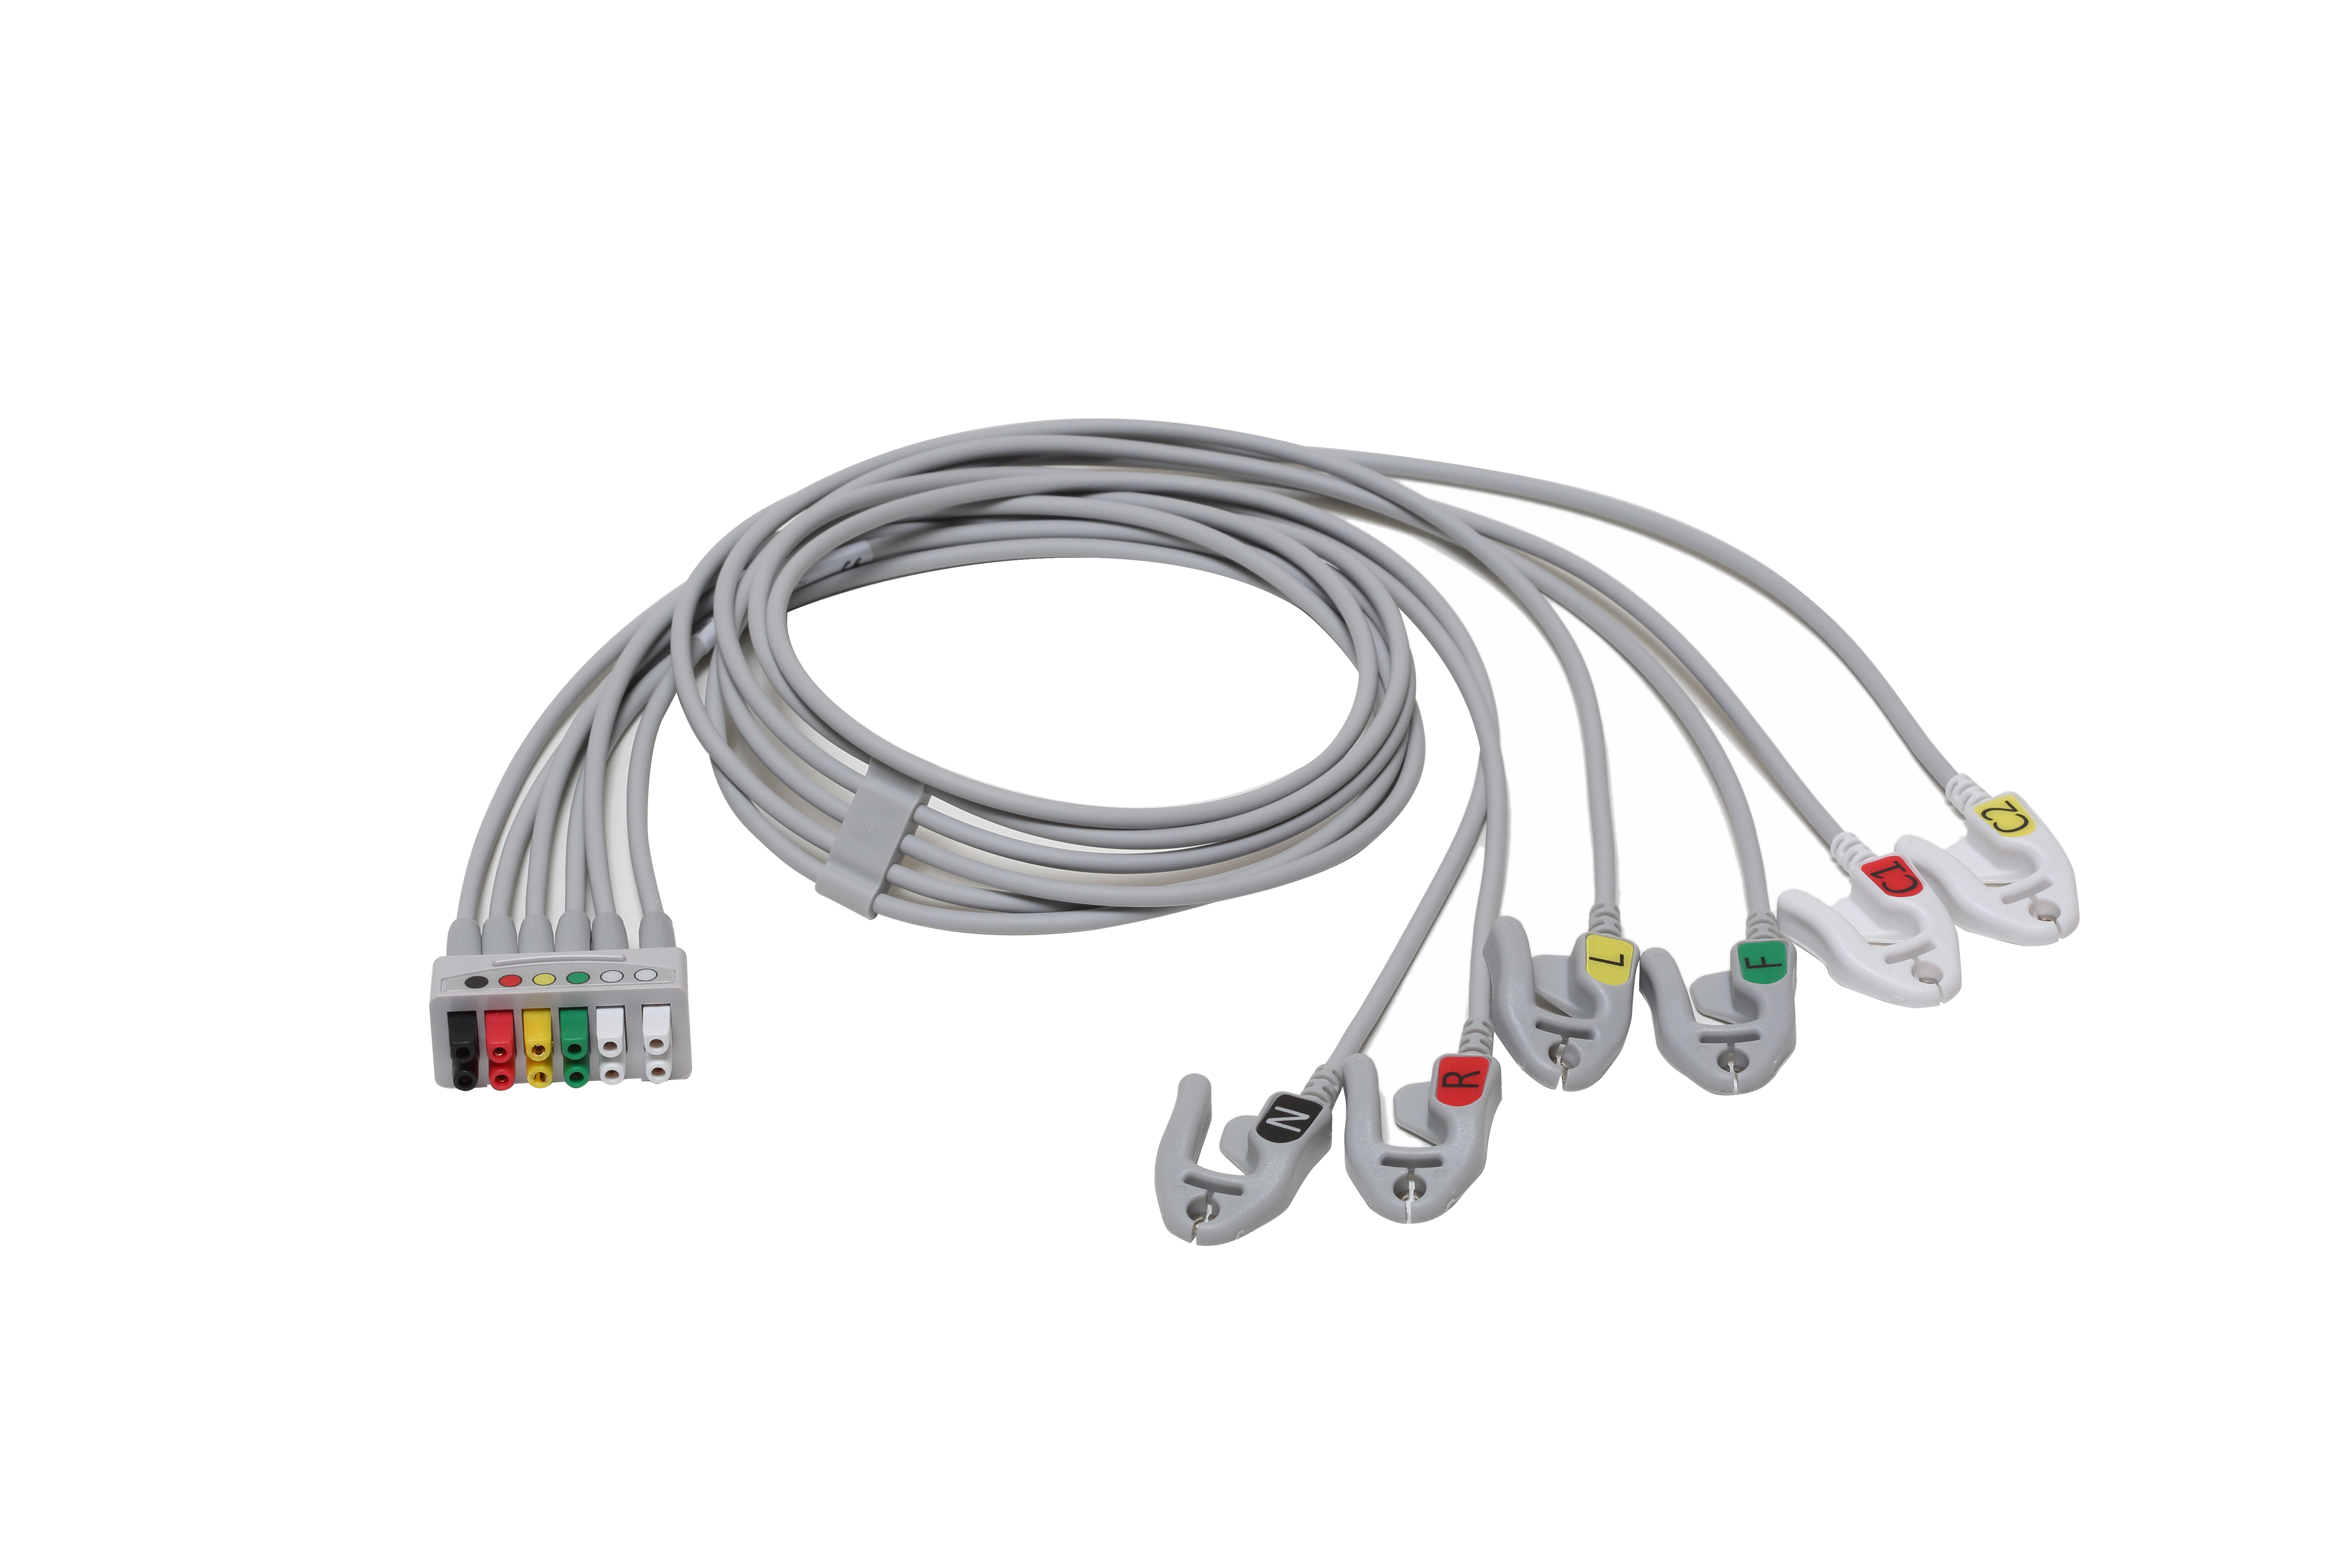 ECG Leadwire set, 6-lead, grouped, Grabber, IEC, 74 cm/ 29 in